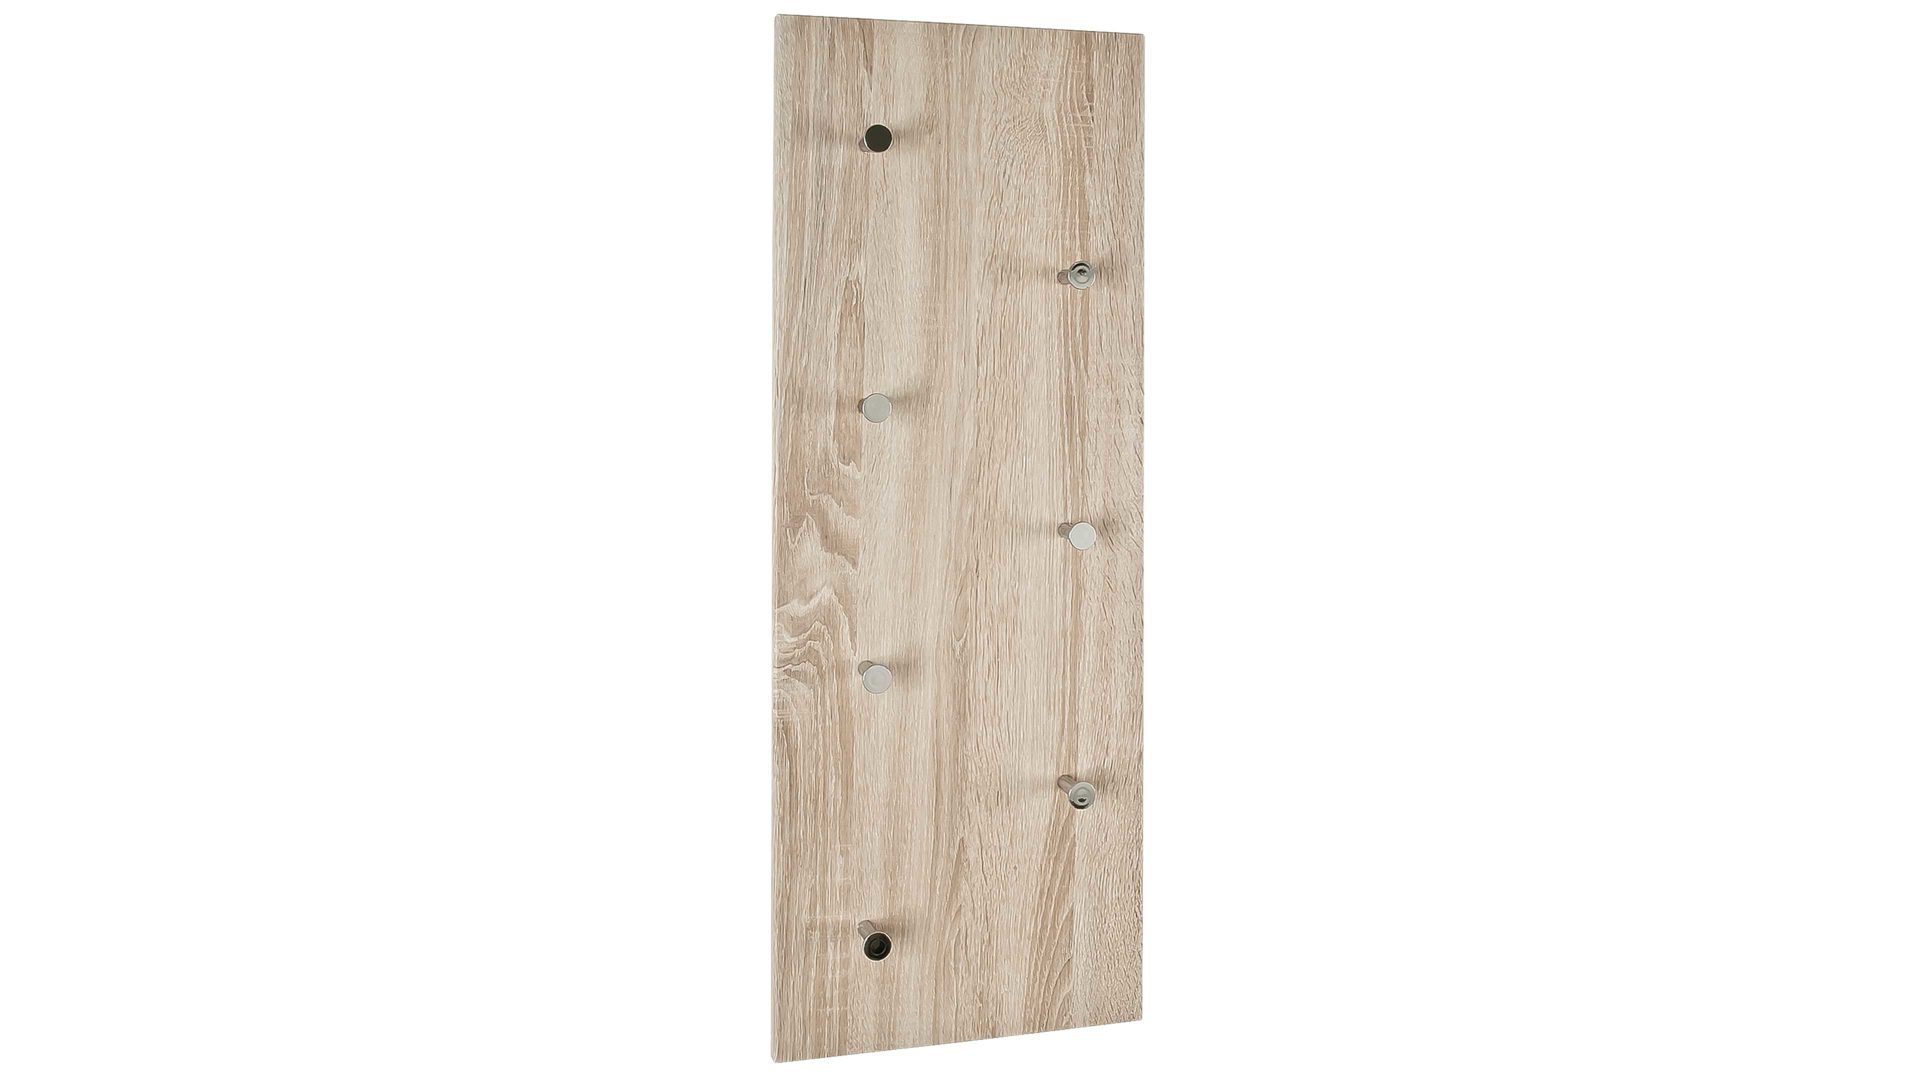 Wandgarderobe Haku aus Holz in Holzfarben Wandgarderobe inklusive Garderobenhaken eichefarbene Kunststoffoberflächen – sieben Haken